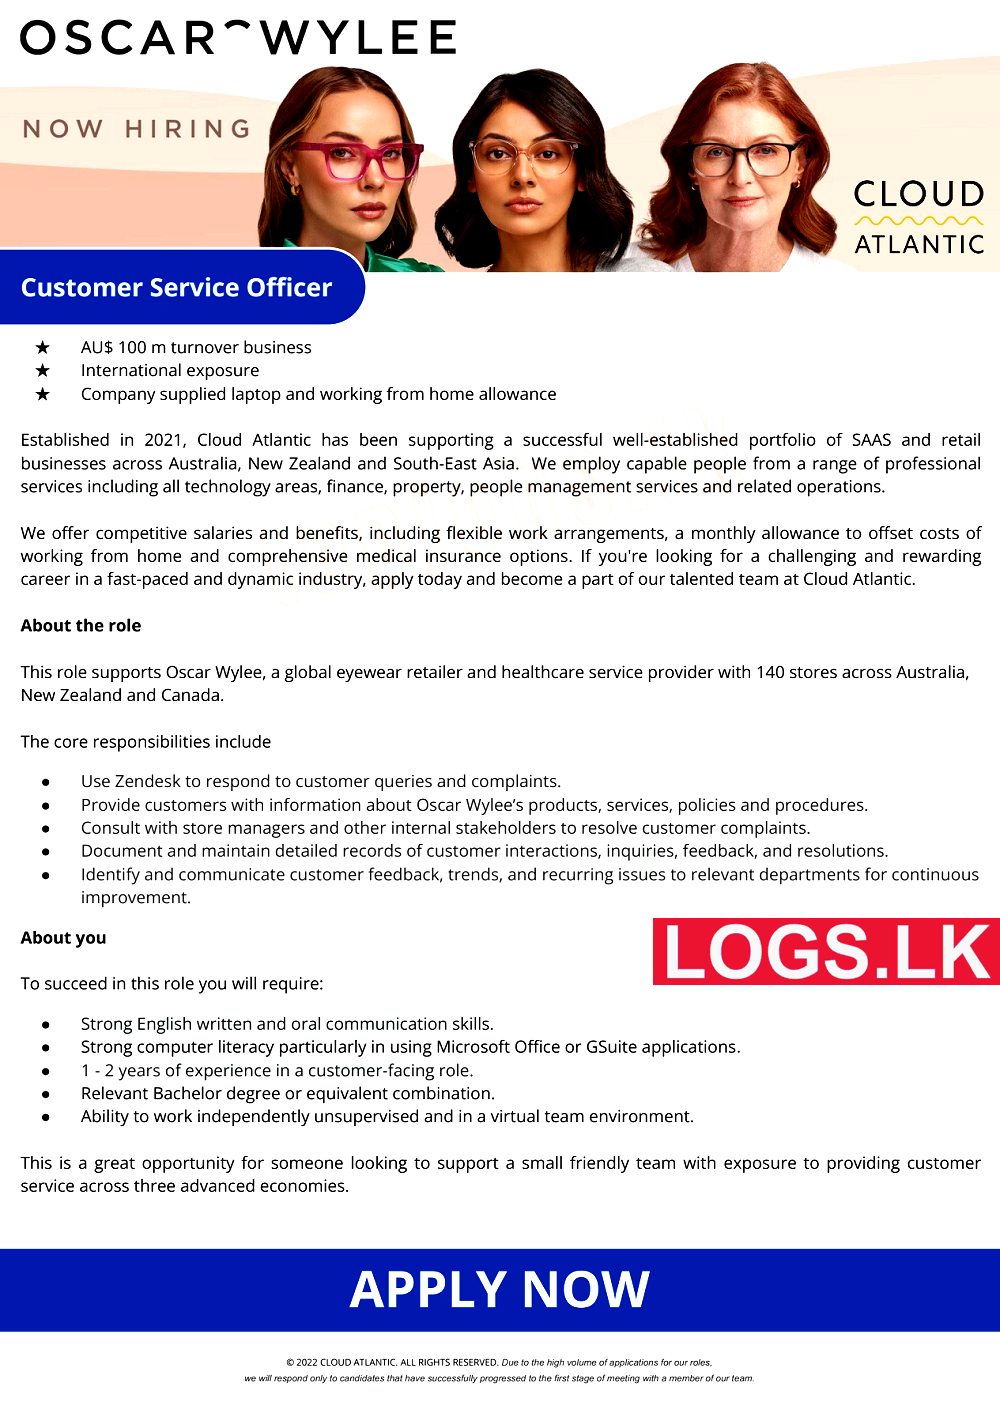 Customer Service Officer Vacancy at Cloud Atlantic (Pvt) Ltd Job Vacancies